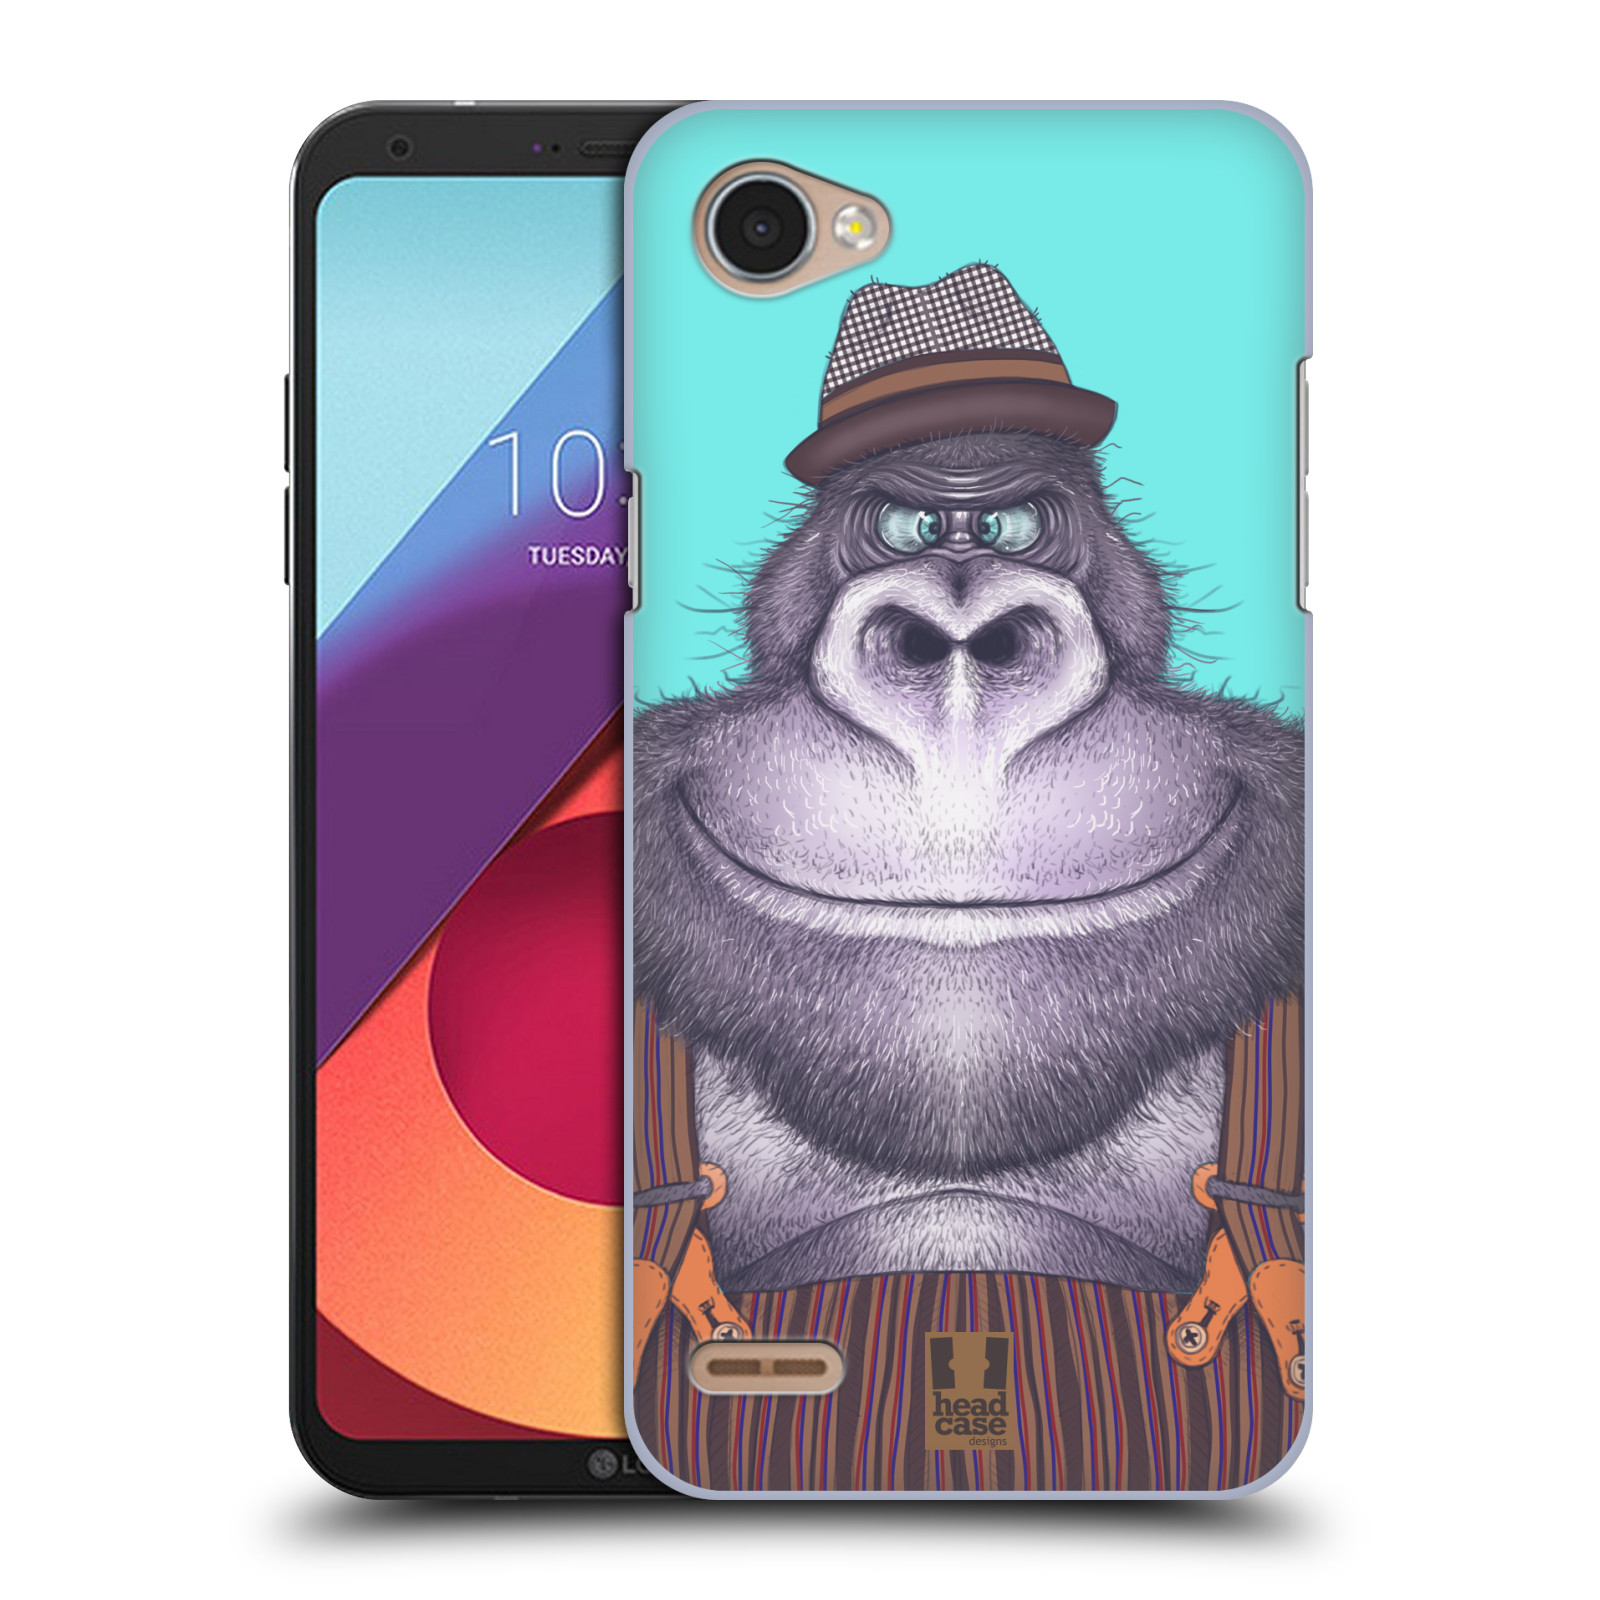 HEAD CASE plastový obal na mobil LG Q6 / Q6 PLUS vzor Kreslená zvířátka gorila